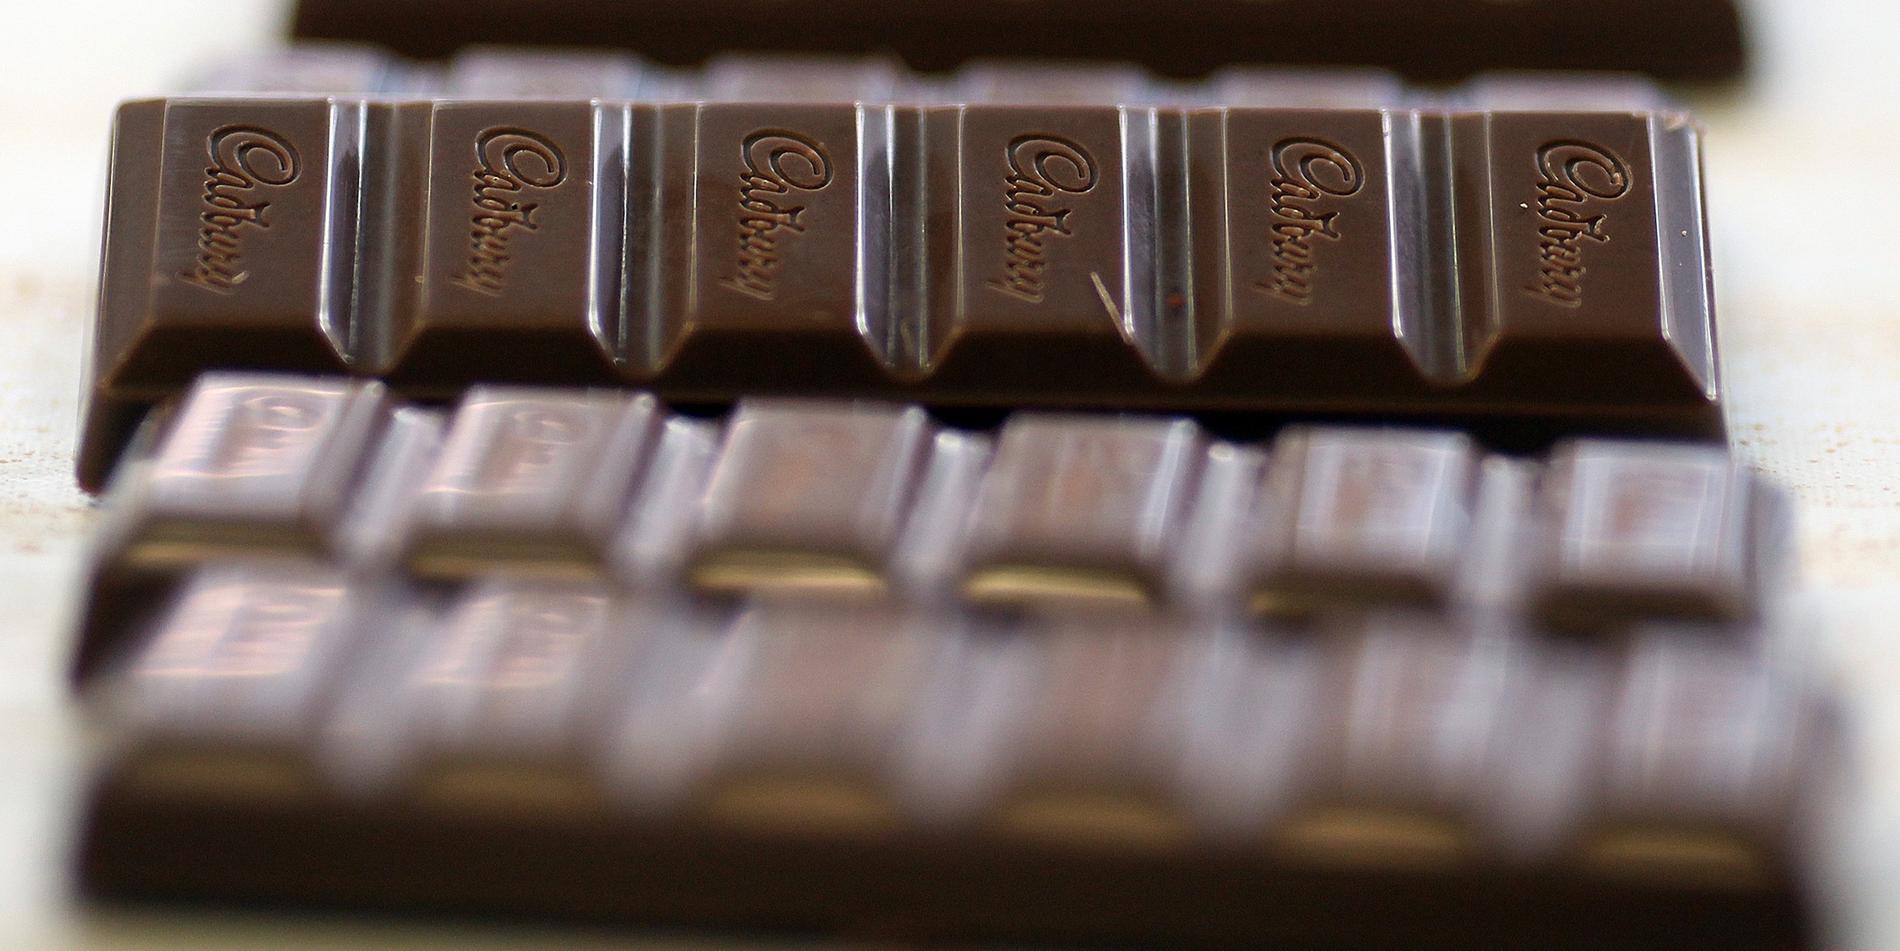 Över hundra 200-grams chokladkakor har stulits från en coop butik.